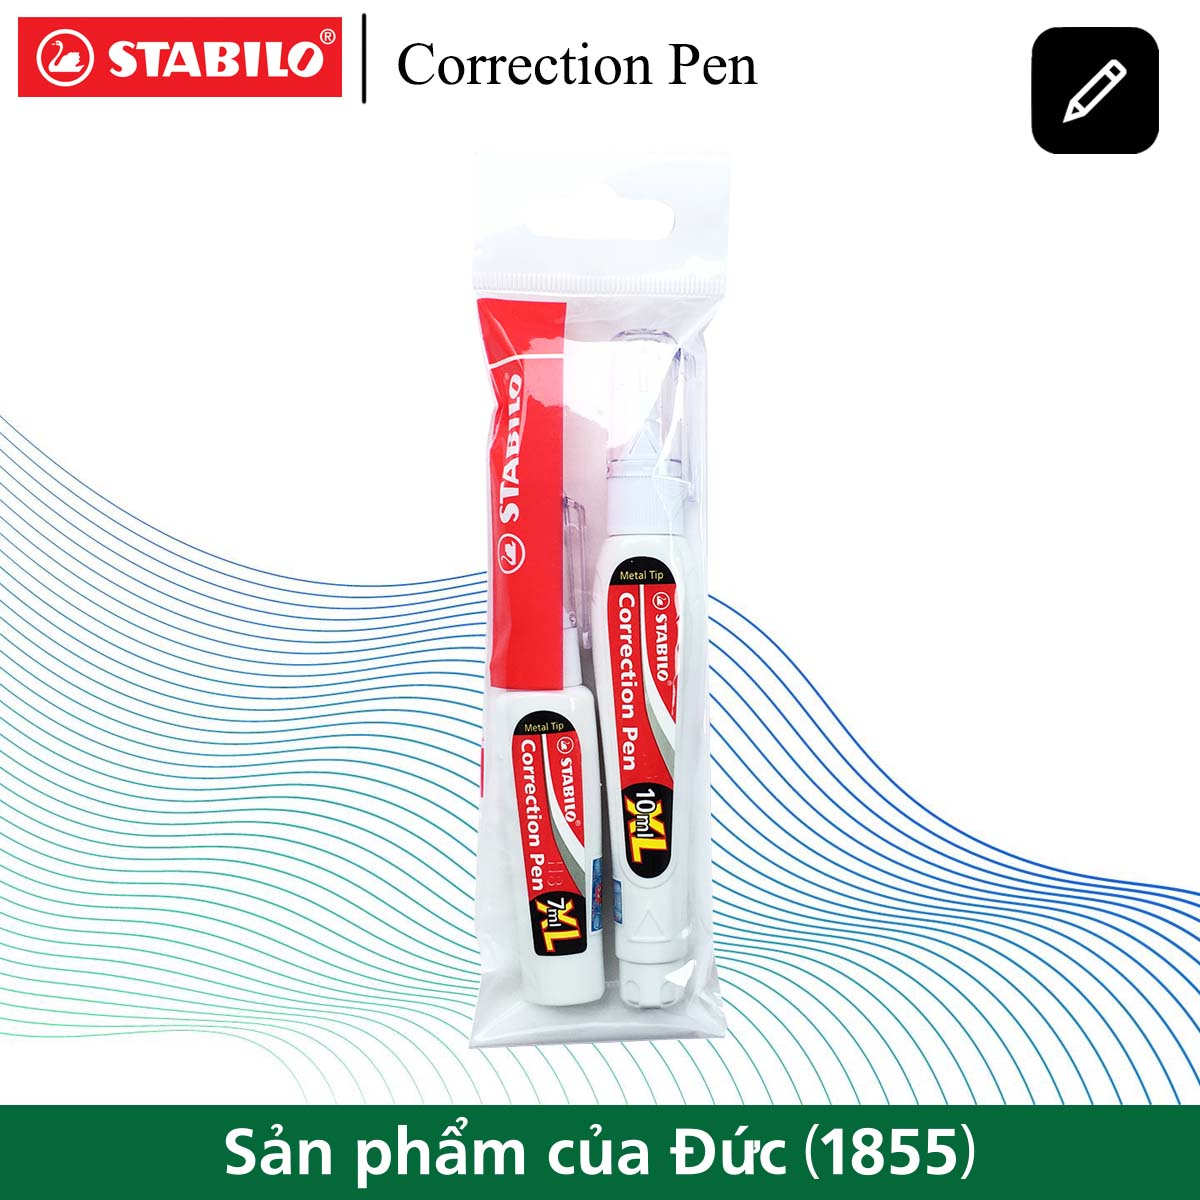 Bộ bút xoá Correction Pen